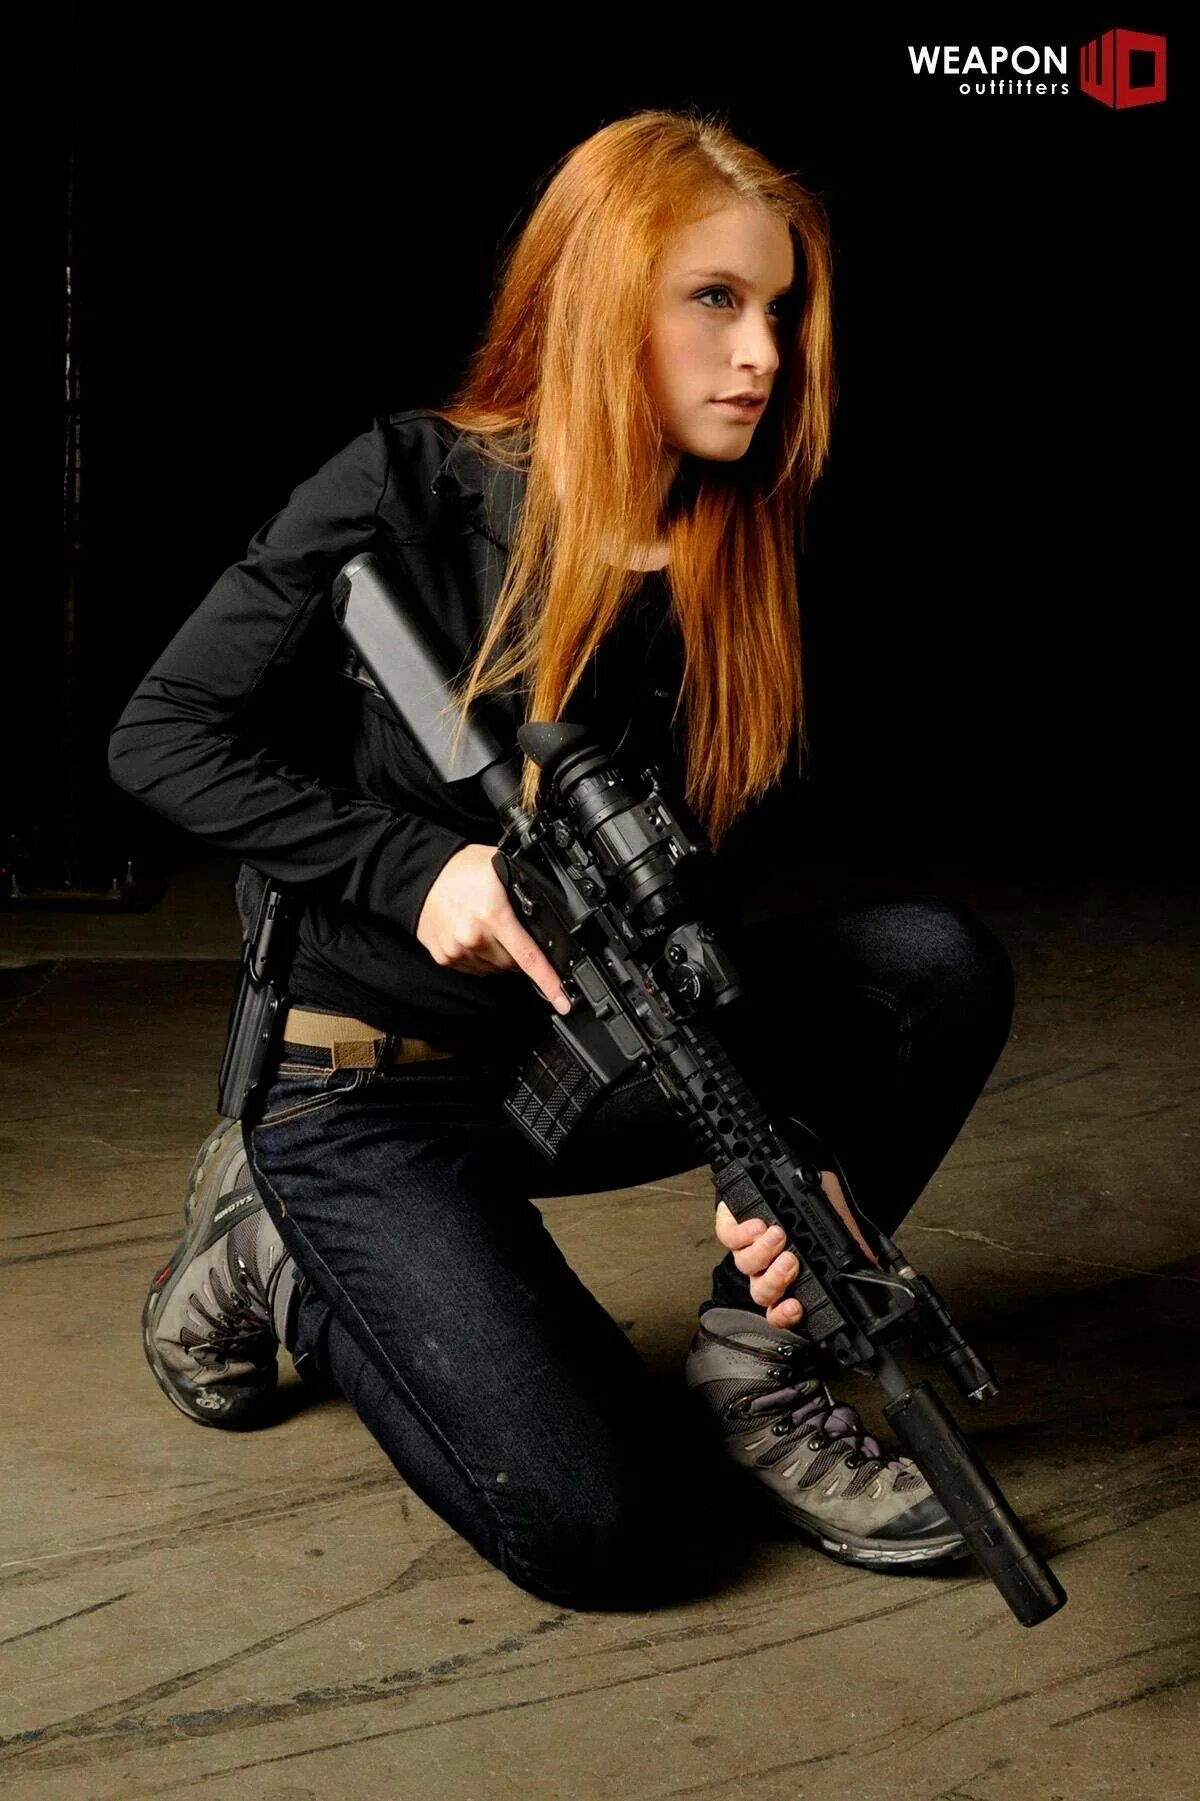 Drunk lady warrior belle. Рыжая девушка с ружьем. Рыжая девушка с оружием. Девушка с рыжими волосами с оружием. Рыжая с автоматом.